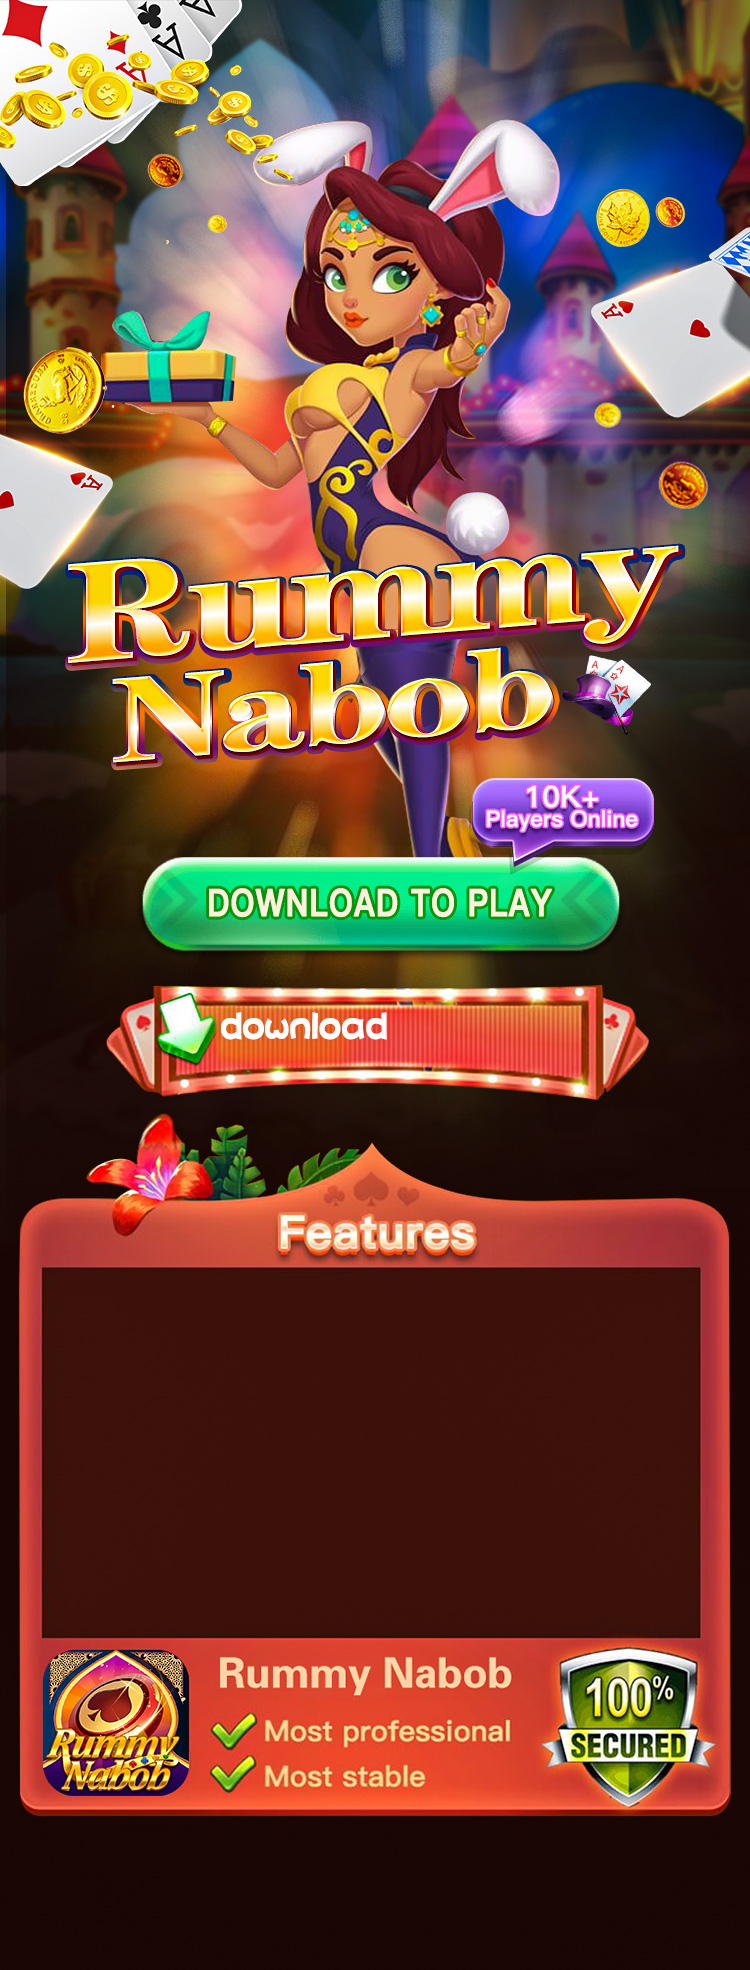 Download Rummy Nabob APK – Best Online Rummy Game